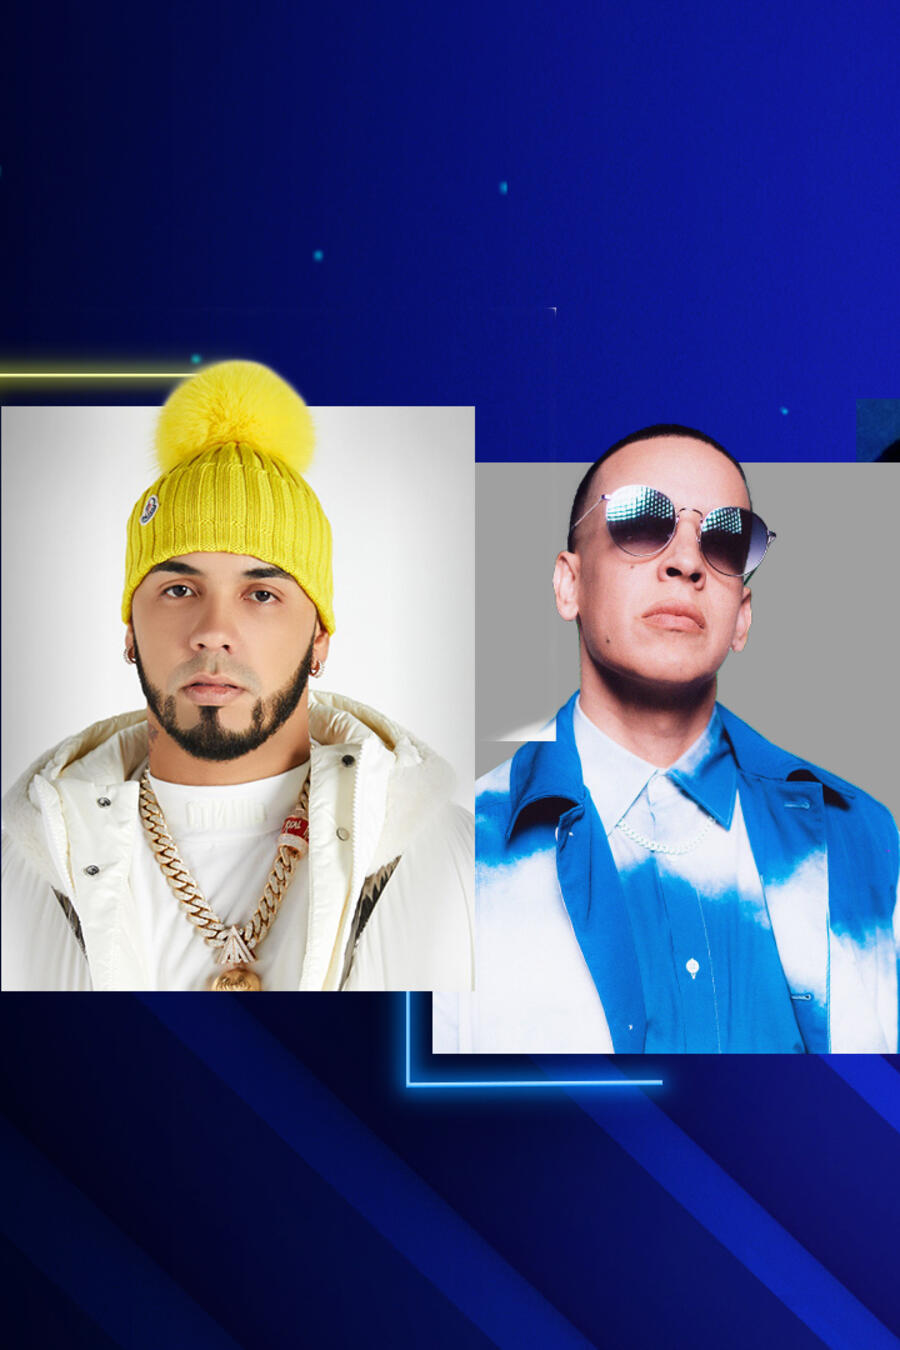 Anuel, Banda MS, Daddy Yankee y más artistas cantarán en Premios Billboard 